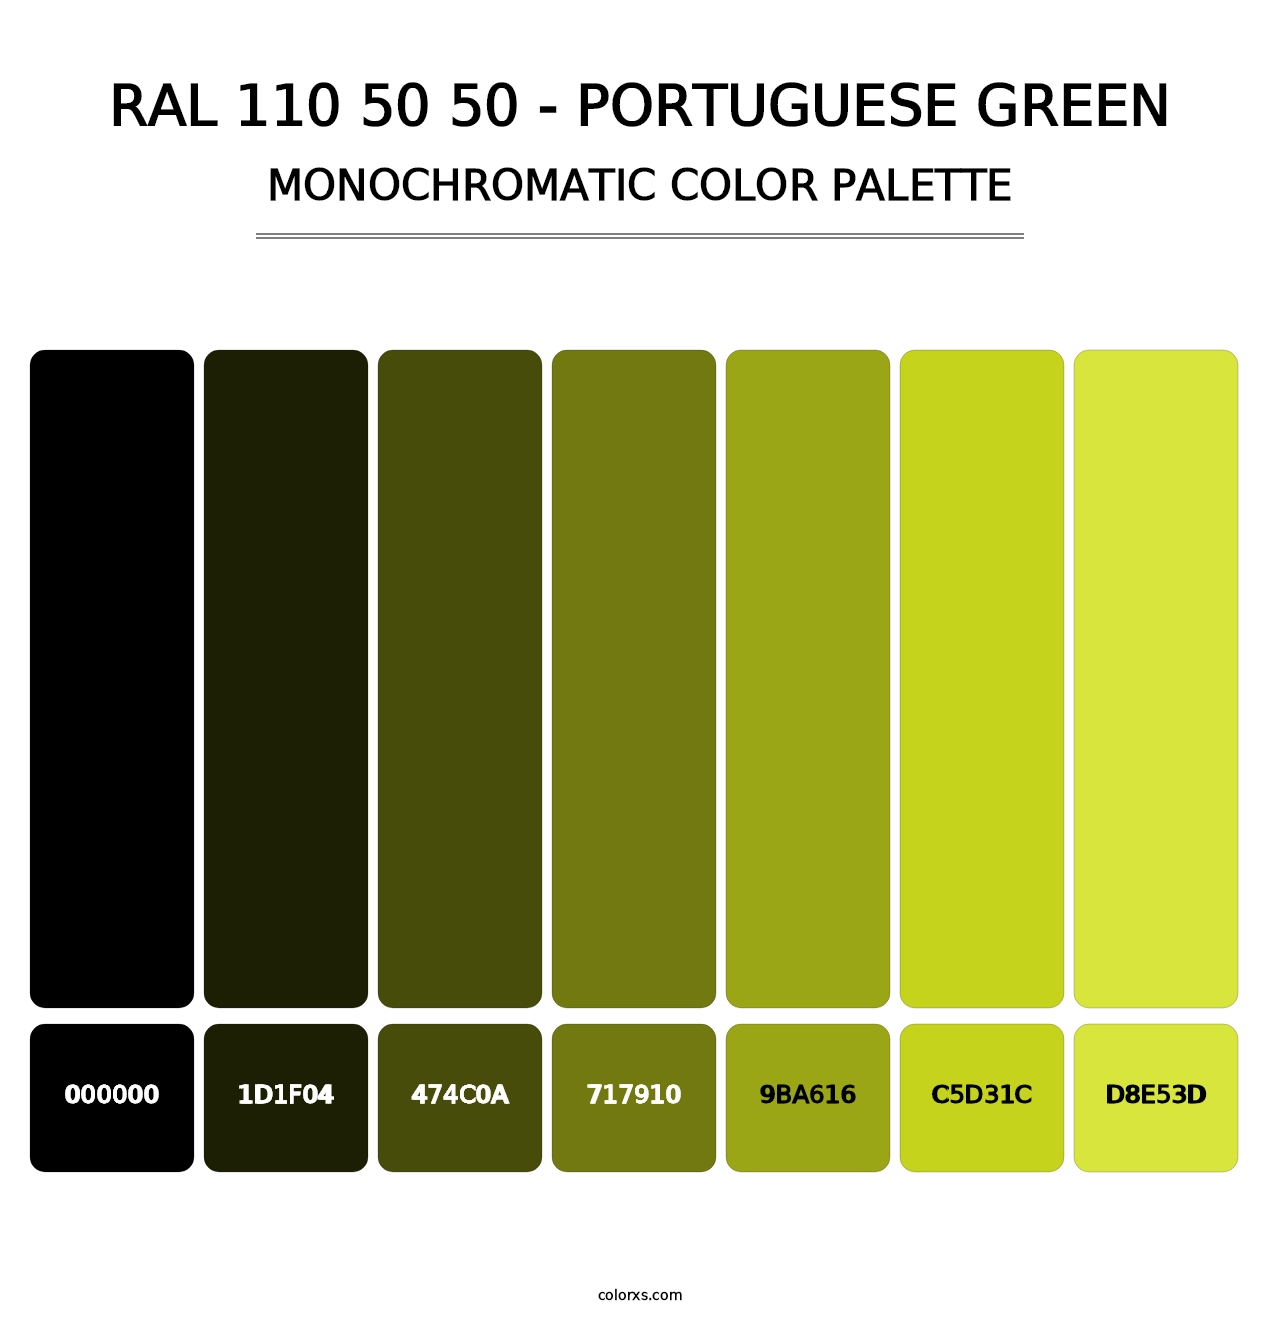 RAL 110 50 50 - Portuguese Green - Monochromatic Color Palette